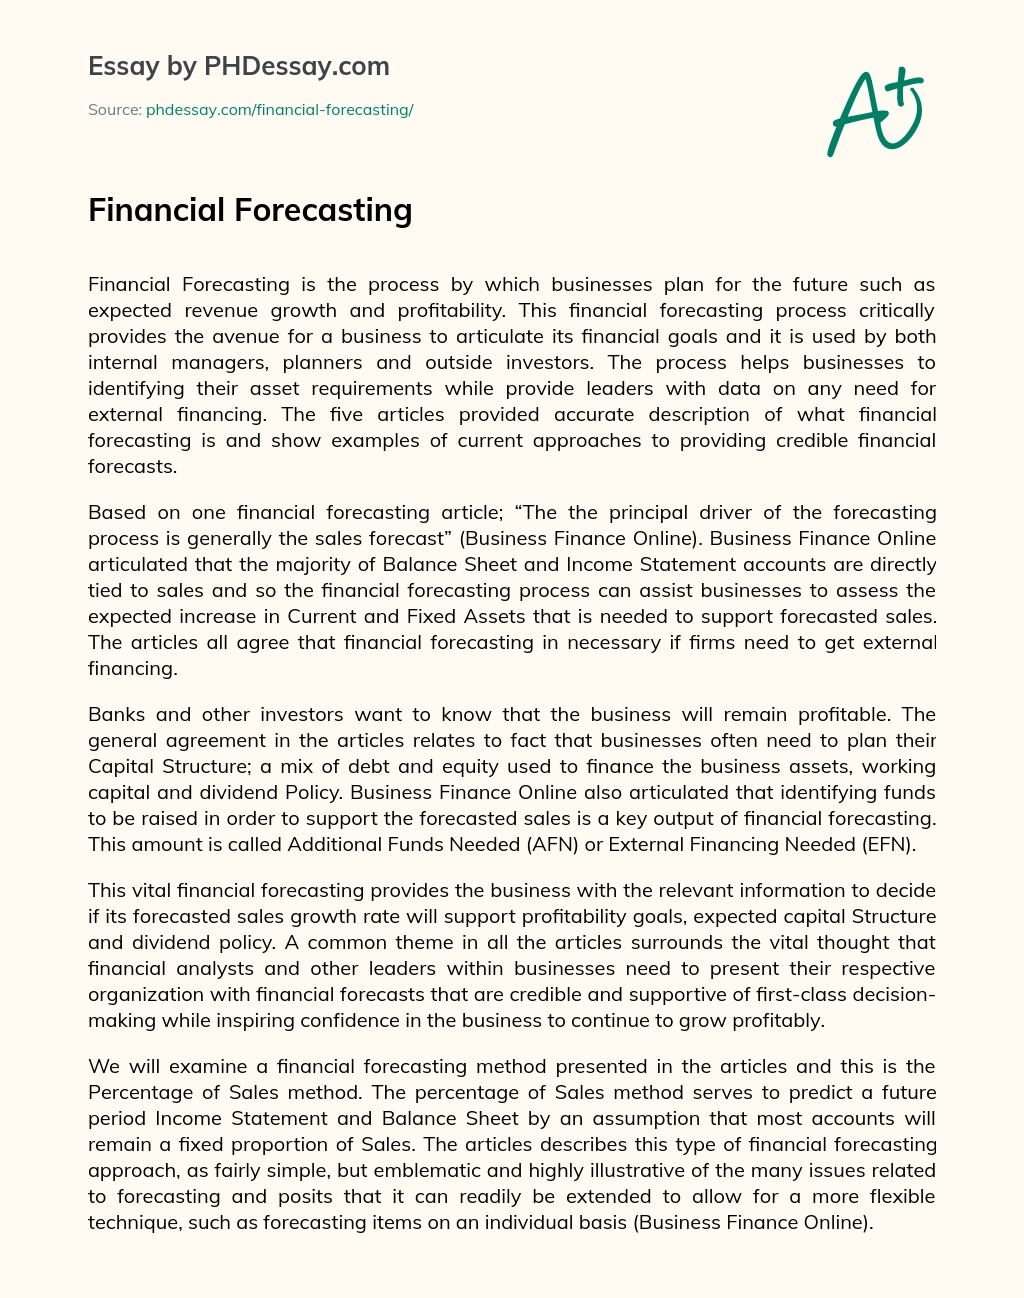 Financial Forecasting essay